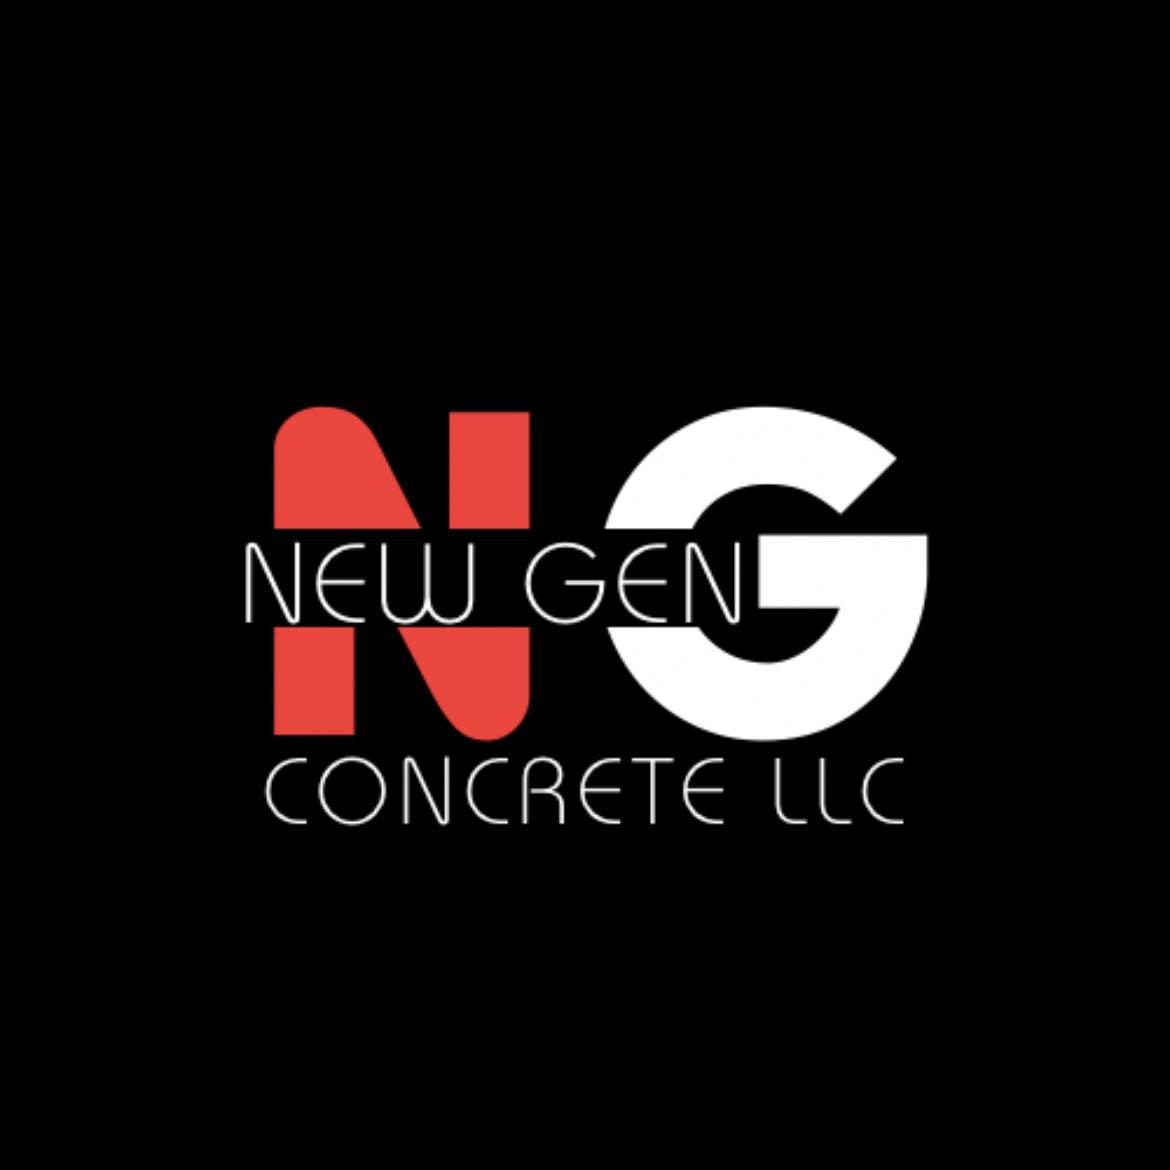 New Gen Concrete